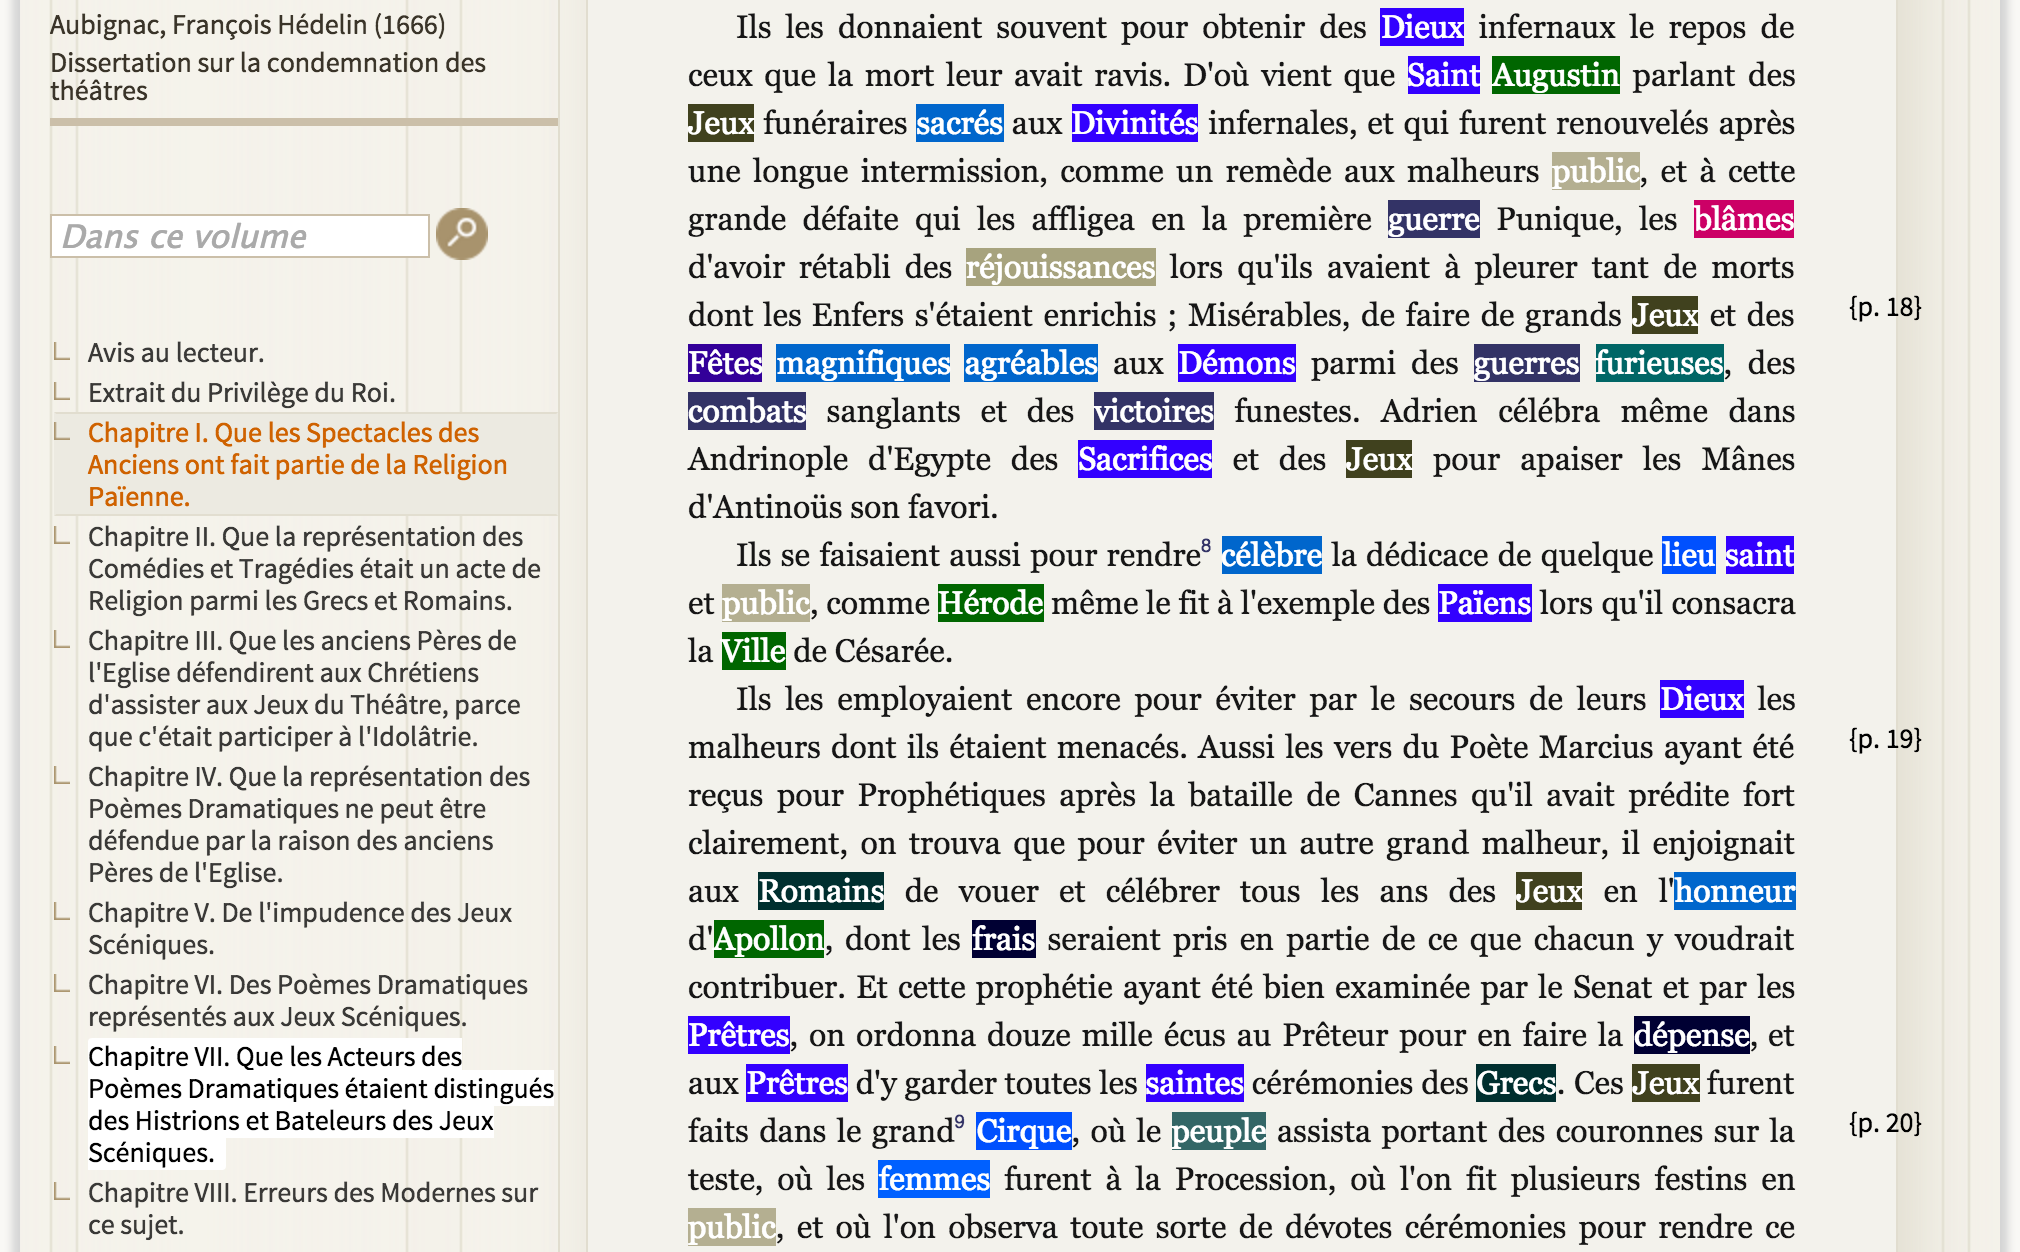 Snapshot of the HTML highlighting of the annotation (François Hédelin d’Aubignac, , 1666, “Chapitre I. Que les Spectacles des Anciens ont fait partie de la Religion Païenne”). The salient words of the religion thematic, very important in this chapter, are highlighted in dark blue (“Dieux”, “Saint”, “Divinités”, “Démons”, “Sacrifices”, “Païens”, “Dieux”, “Prêtres”, etc.)